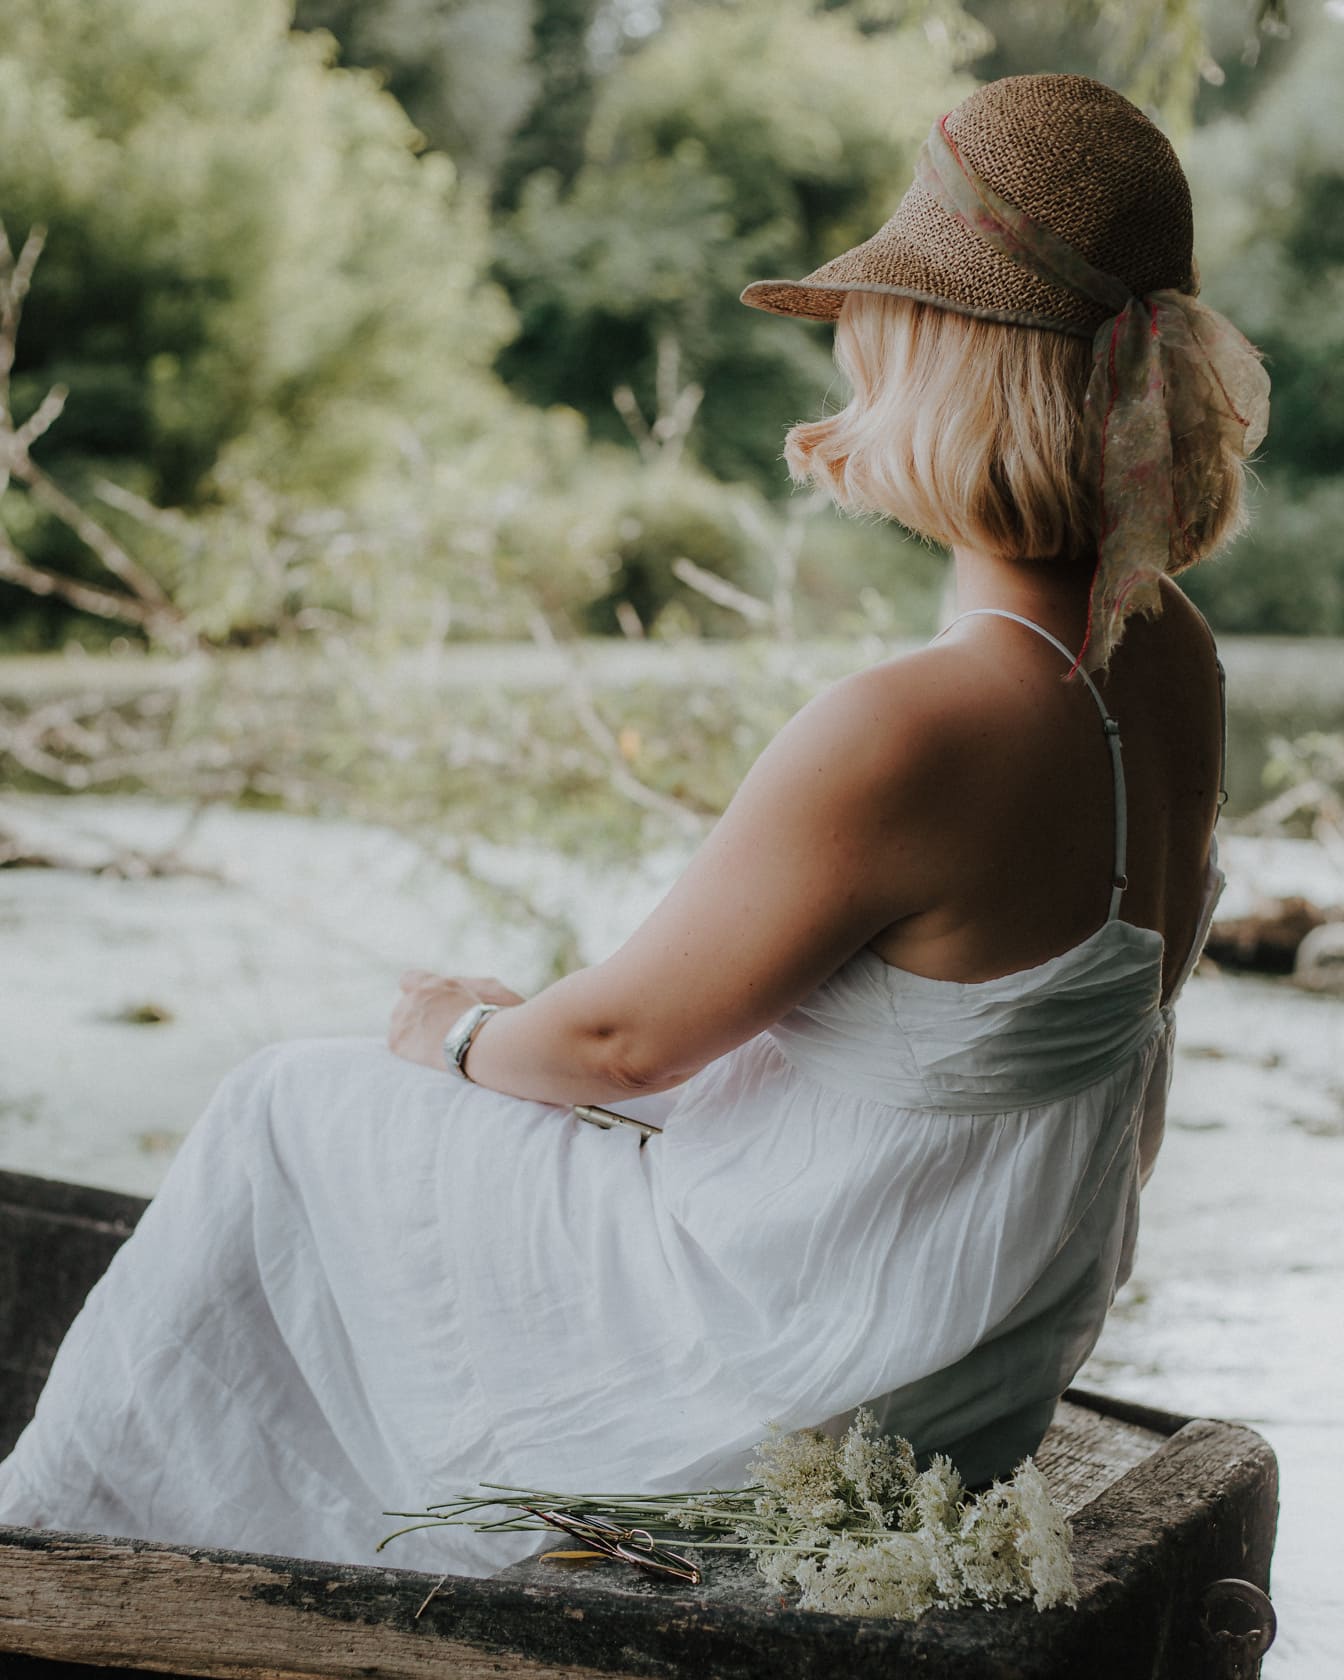 Классическое белое платье и соломенная шляпа на фото модели